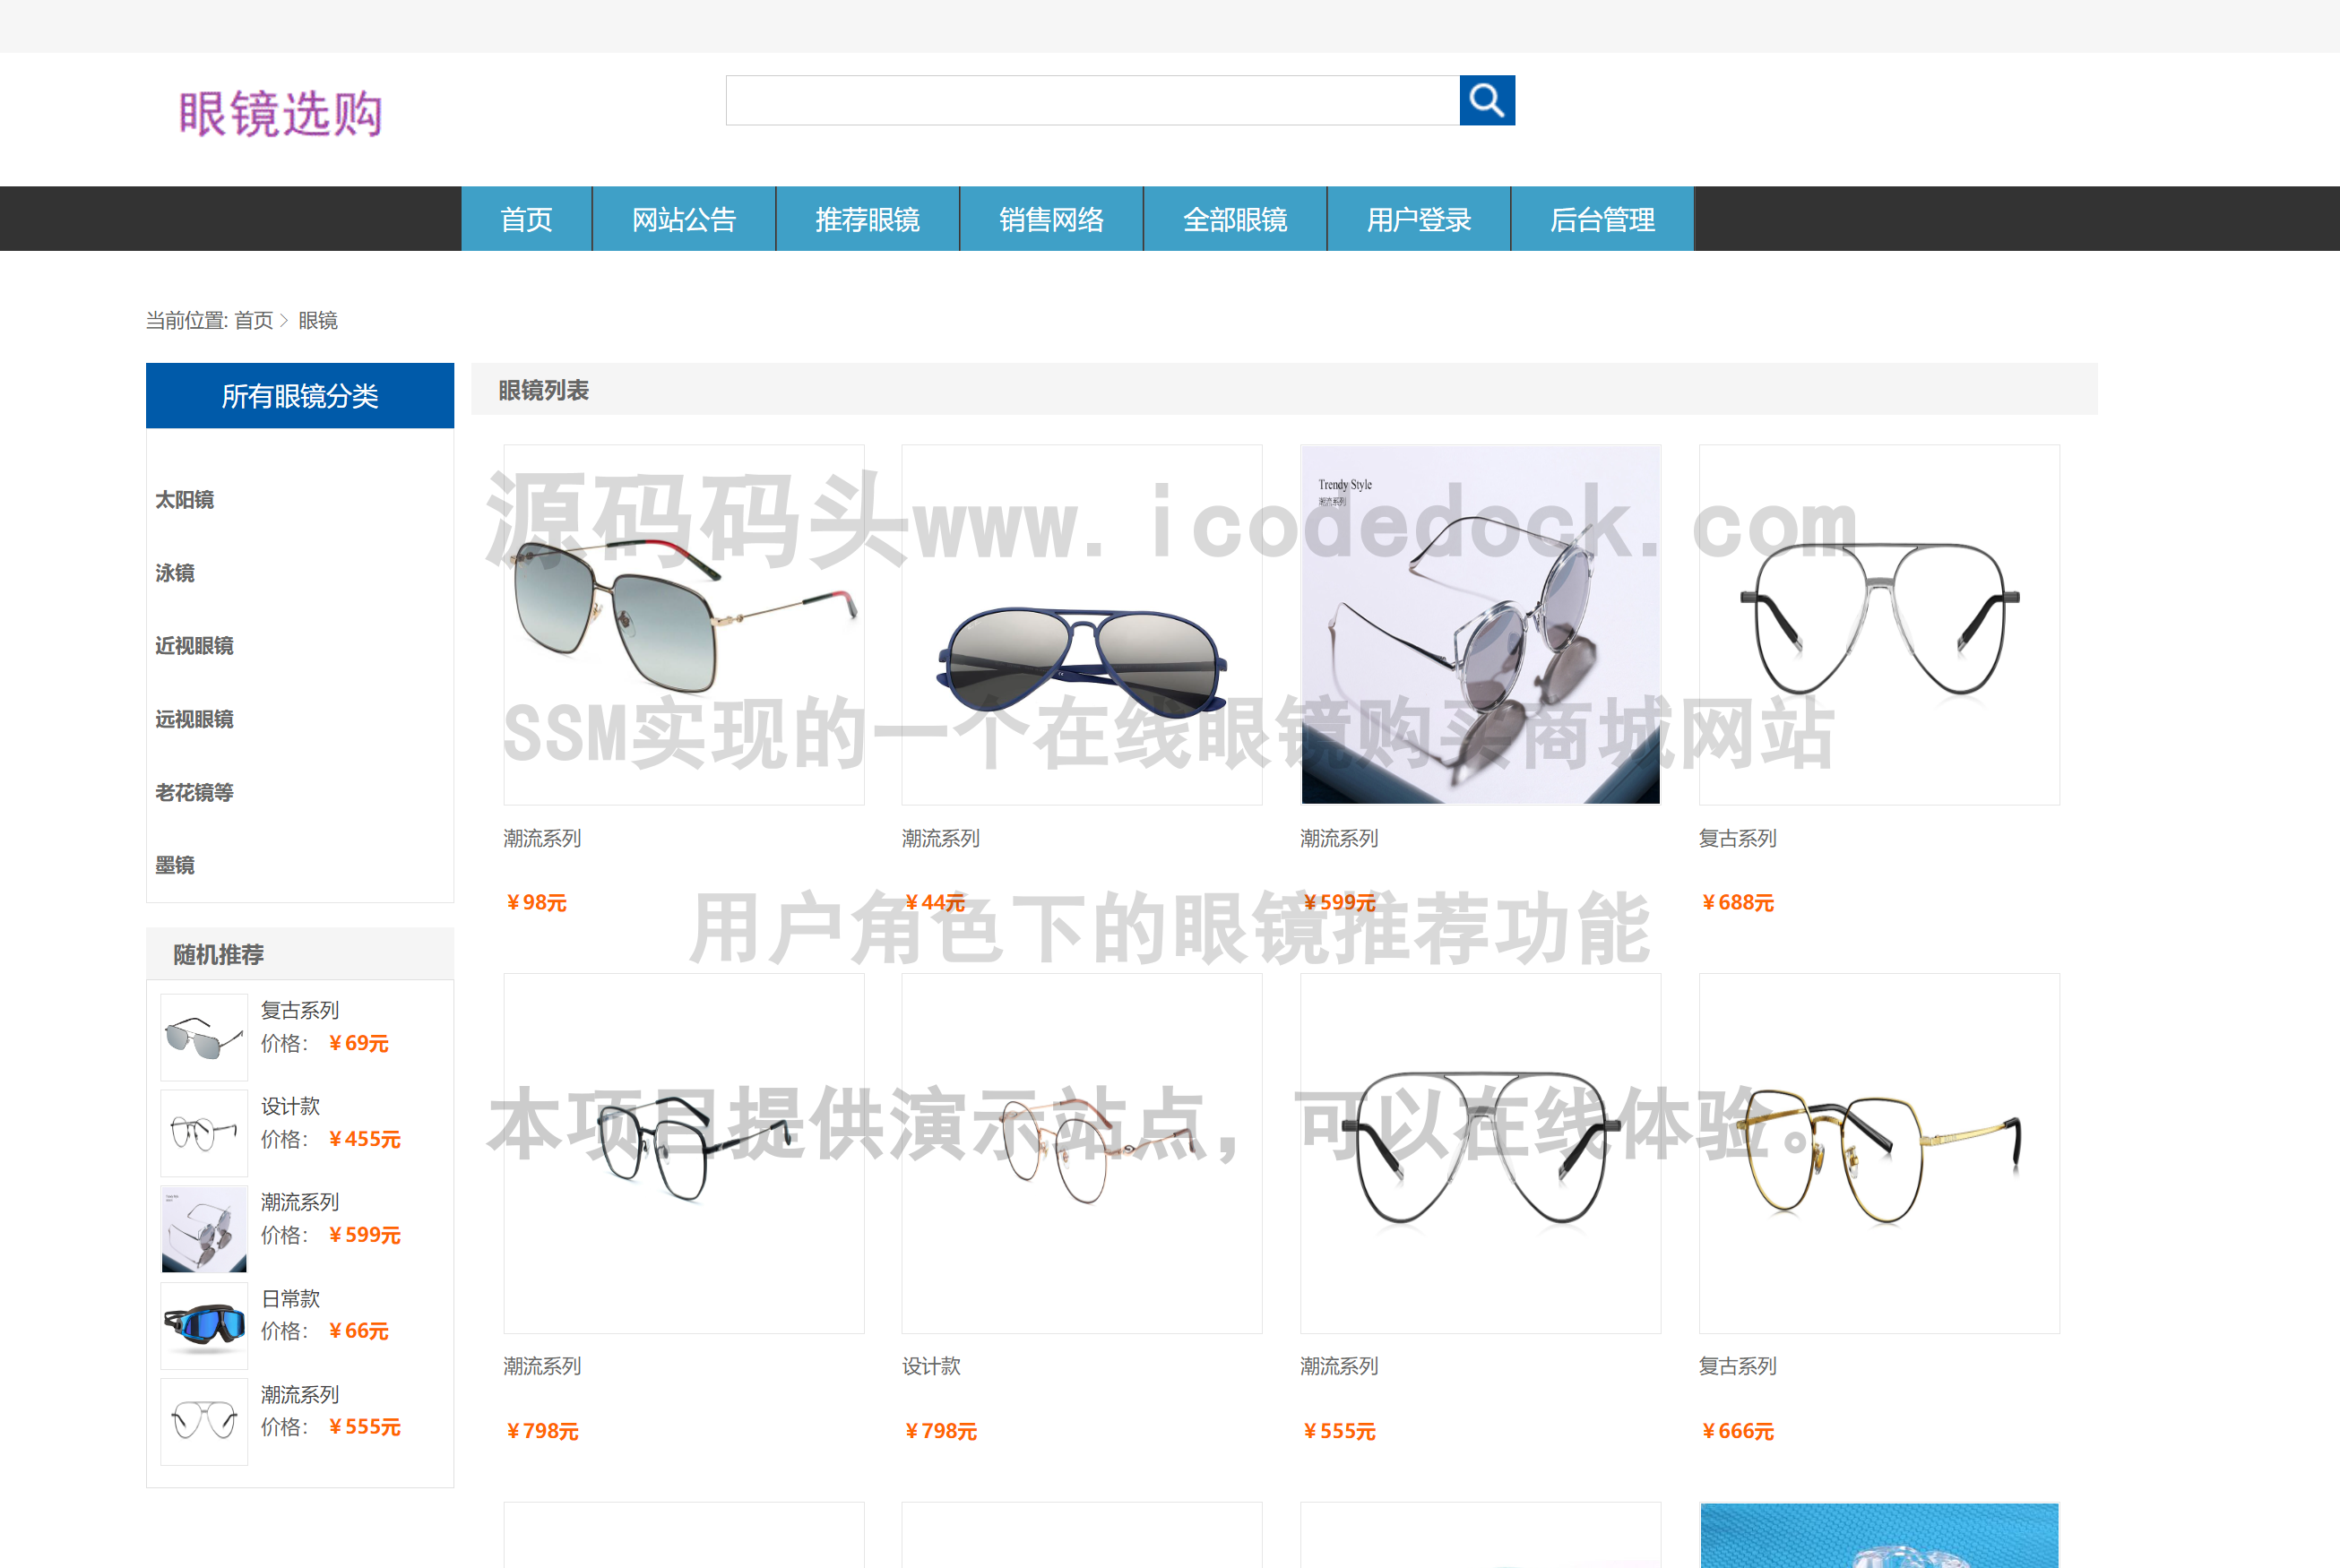 源码码头-SSM实现的一个在线眼镜购买商城网站-用户角色-眼镜推荐